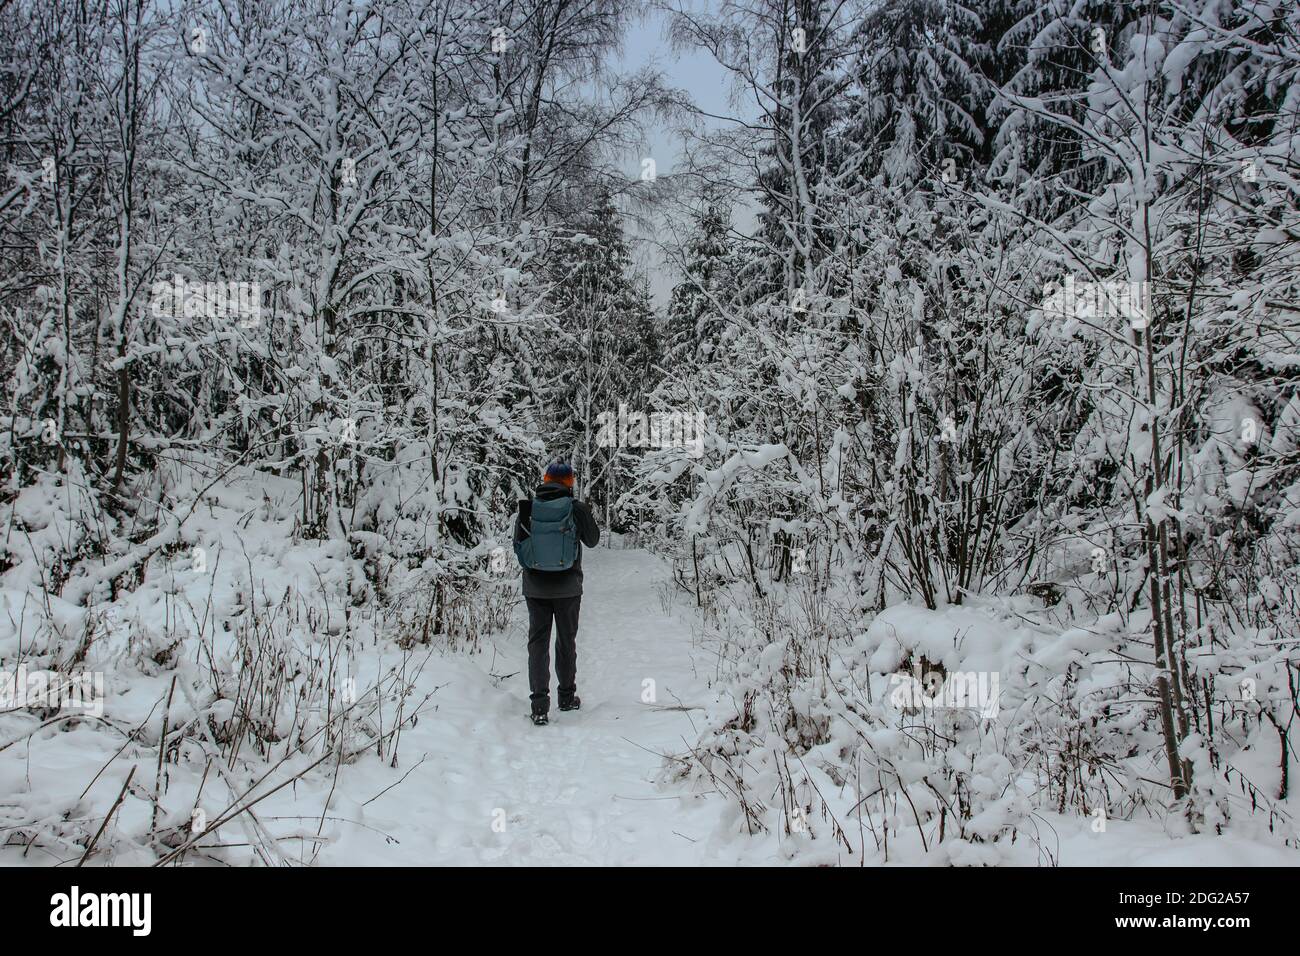 Solo zaino in spalla a piedi in congelato nevoso Forest.Winter panorama paesaggio con alberi coperti di neve, nebbia.pittoresco e meraviglioso scenario invernale.Cold Foto Stock